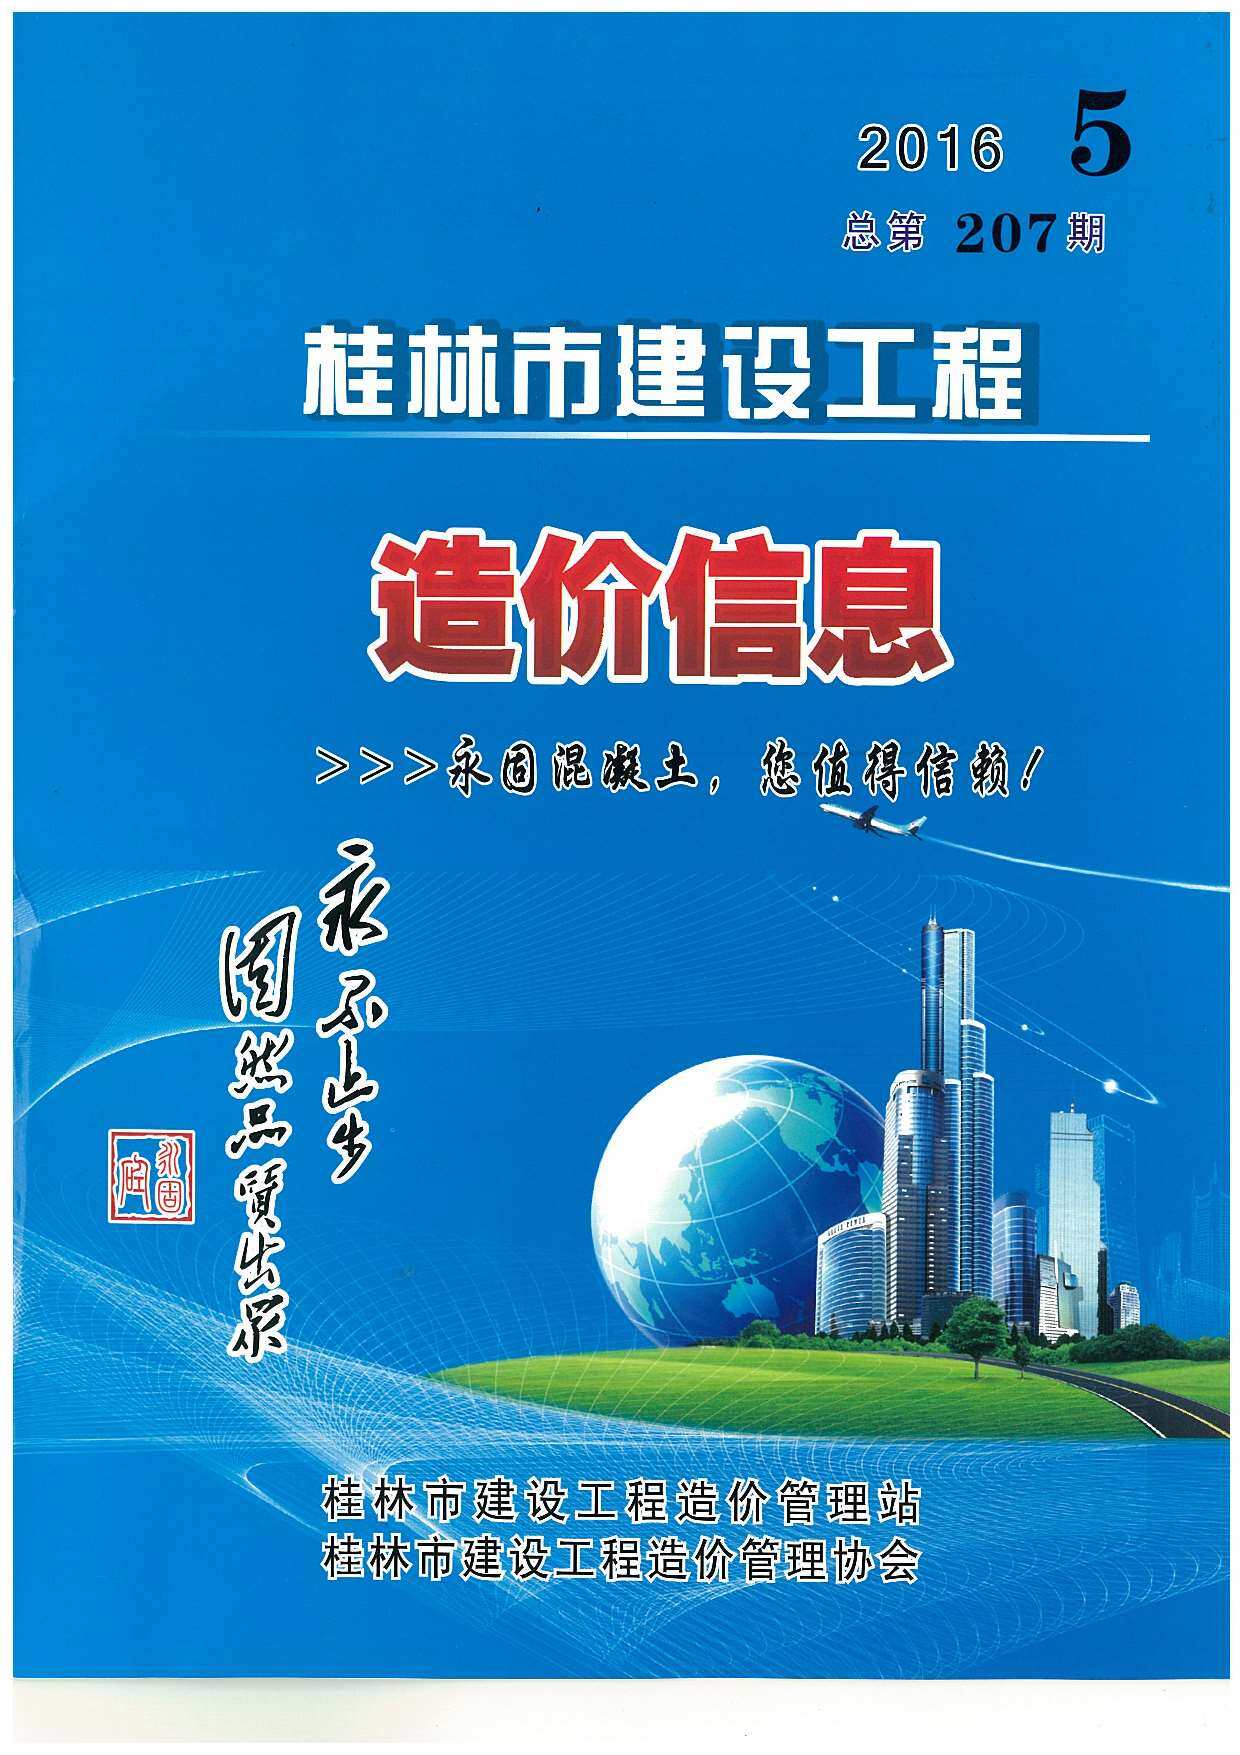 桂林市2016年5月工程造价信息期刊